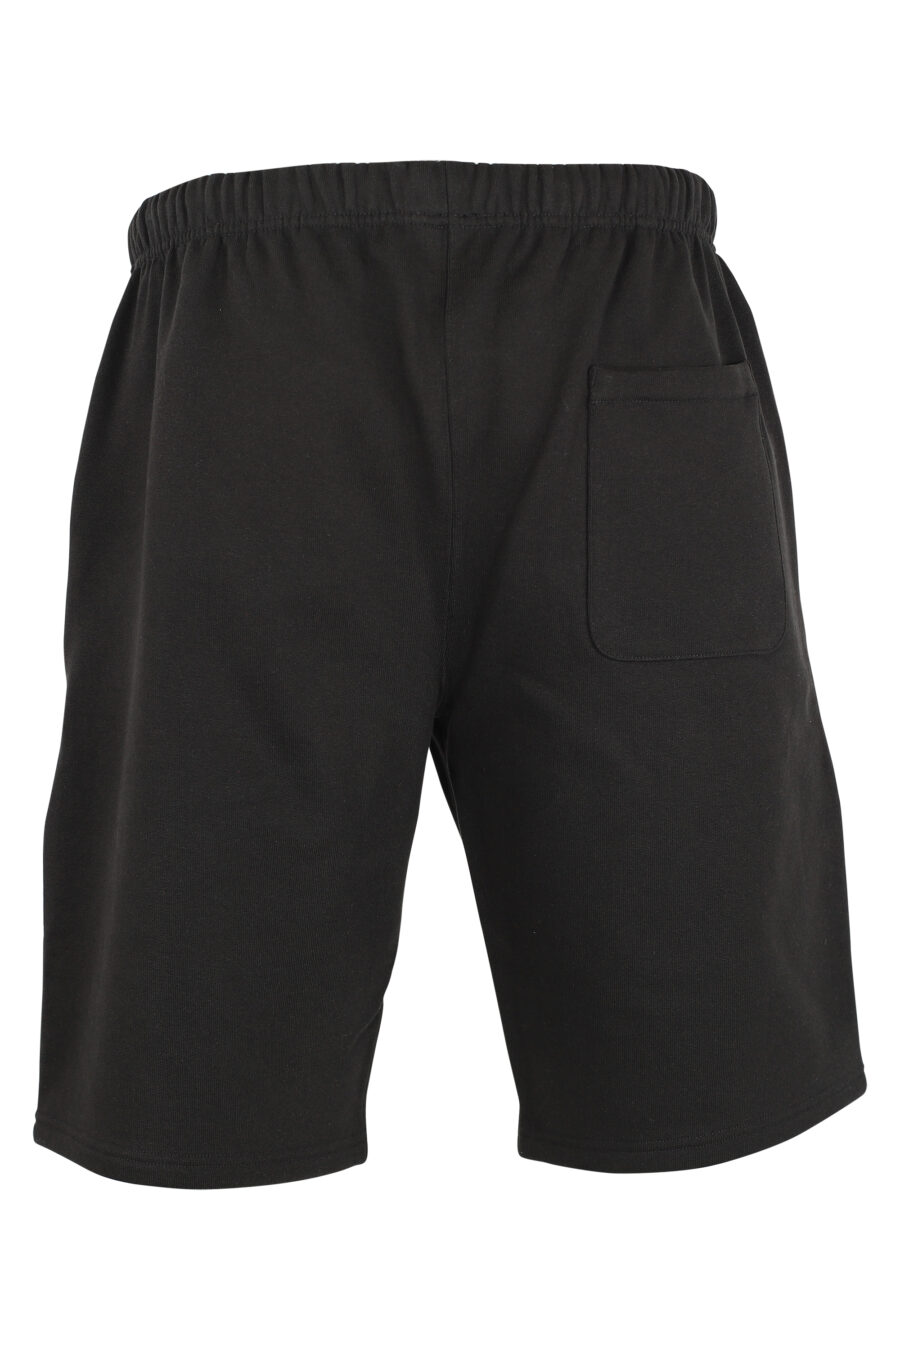 Pantalón de chándal negro corto con minilogo "paris classic" - IMG 9511